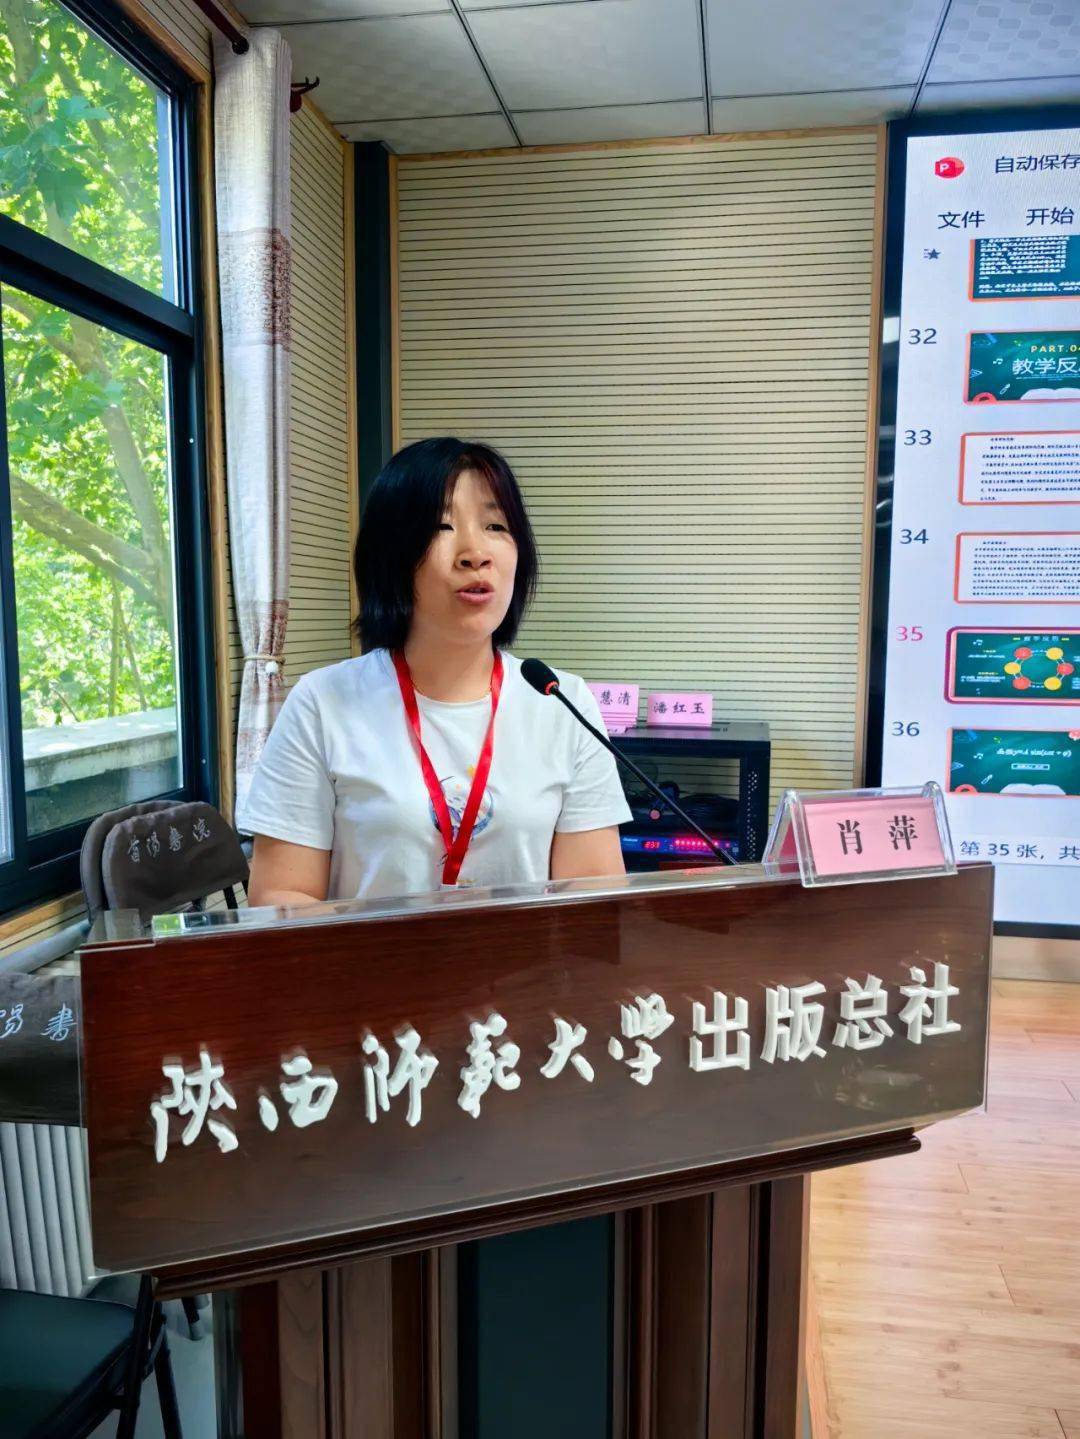 半场由来自陕西省礼泉县第二中学的王翠老师带来高中视频展示课函数